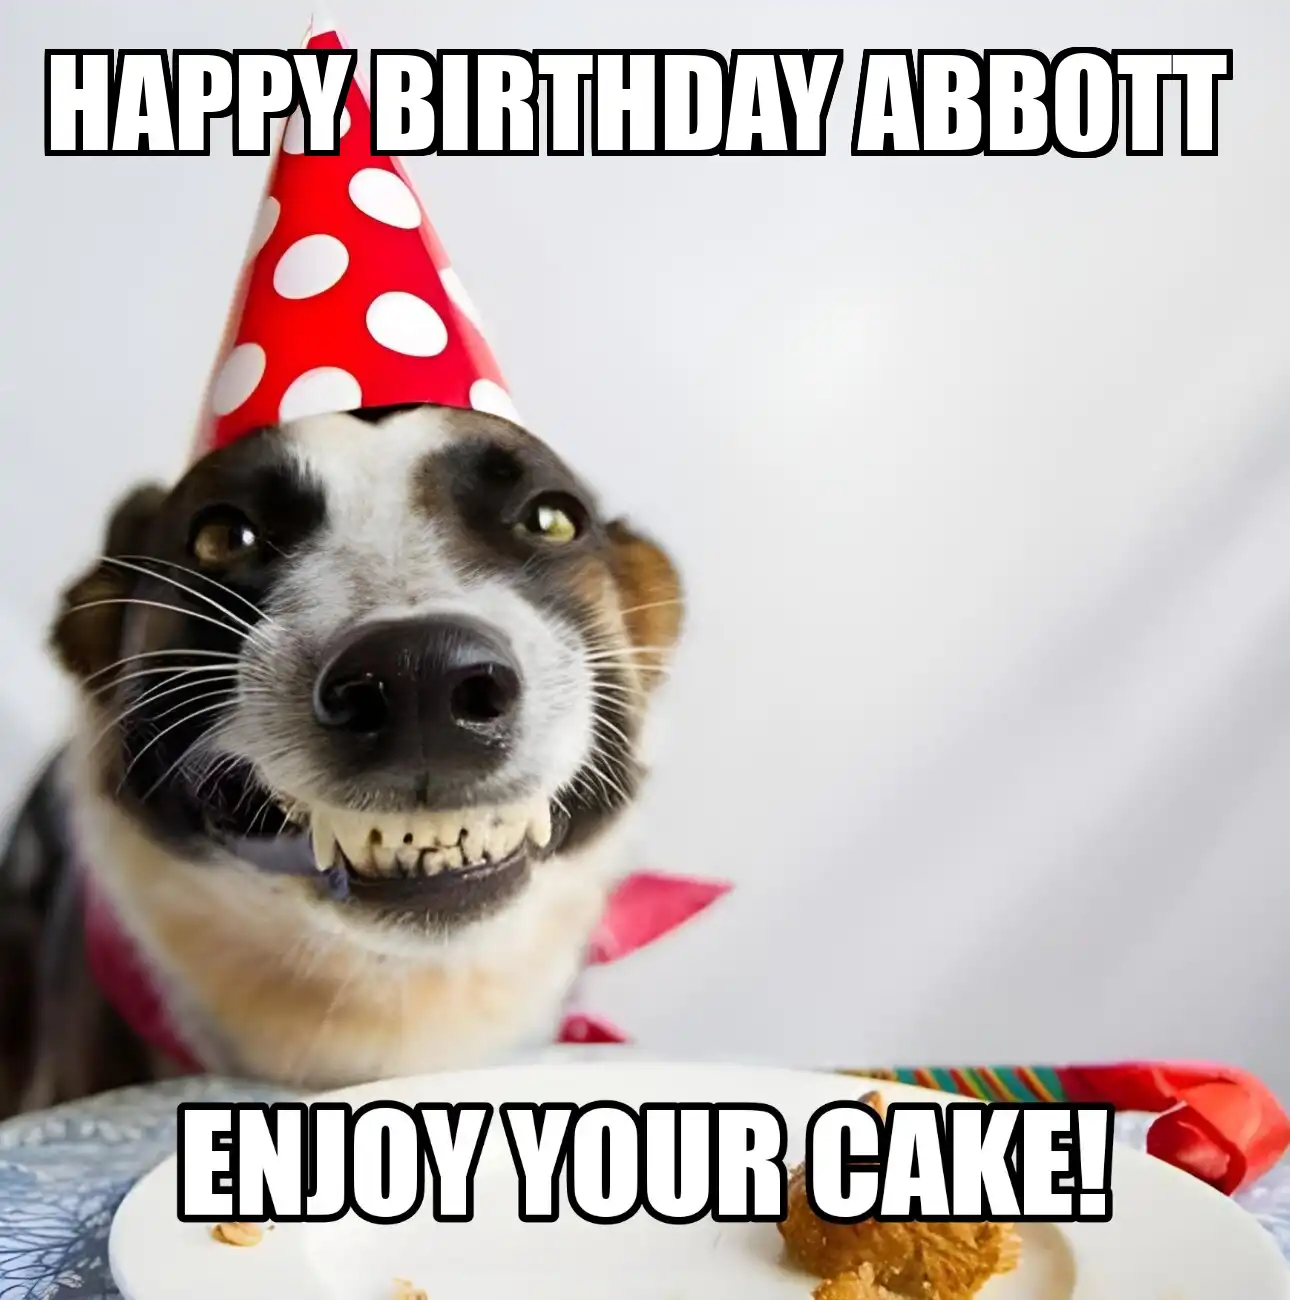 Happy Birthday Abbott Enjoy Your Cake Dog Meme